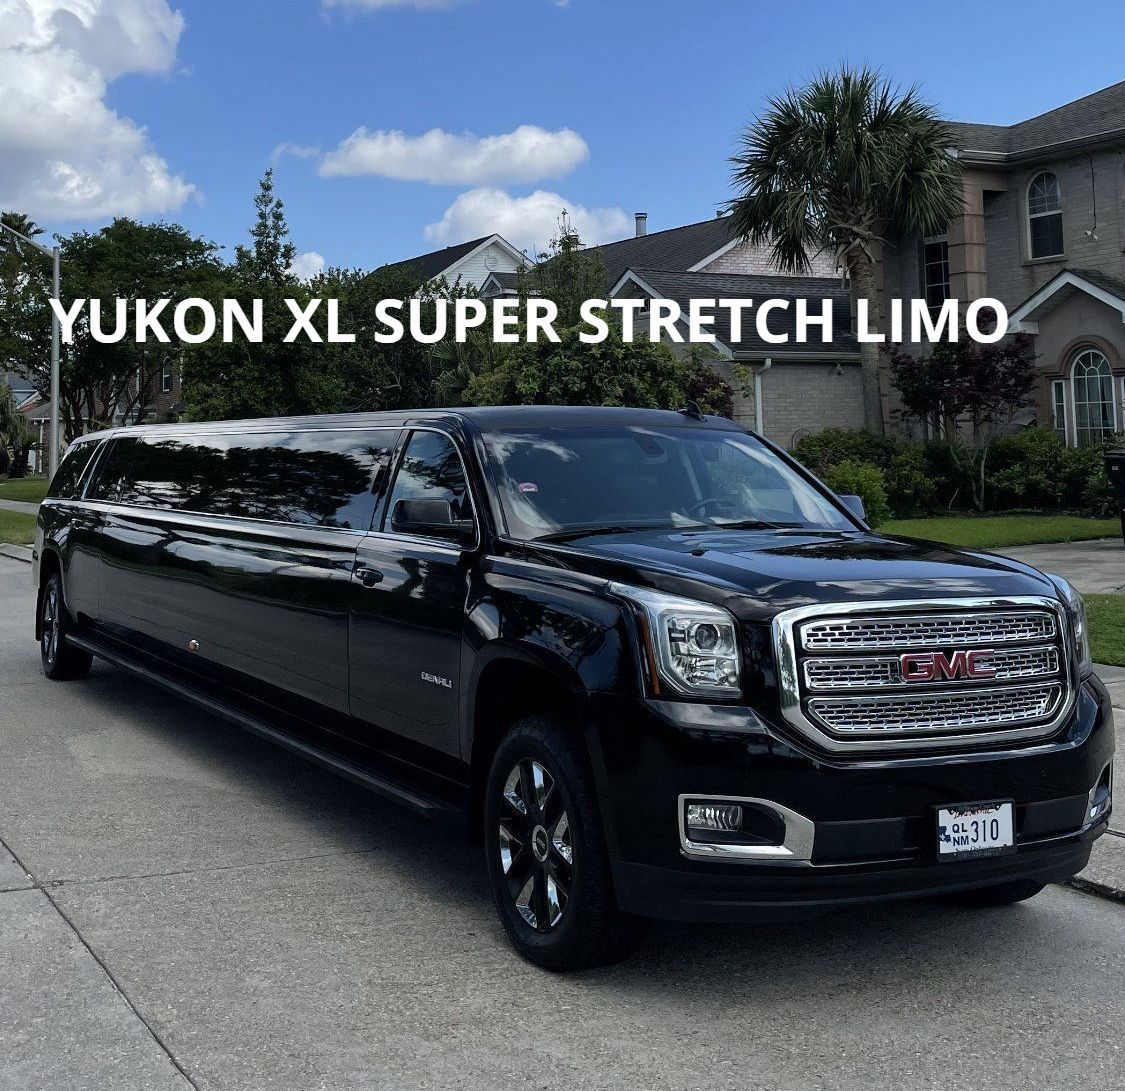 YUKON XL SUV STRETCH LIMO